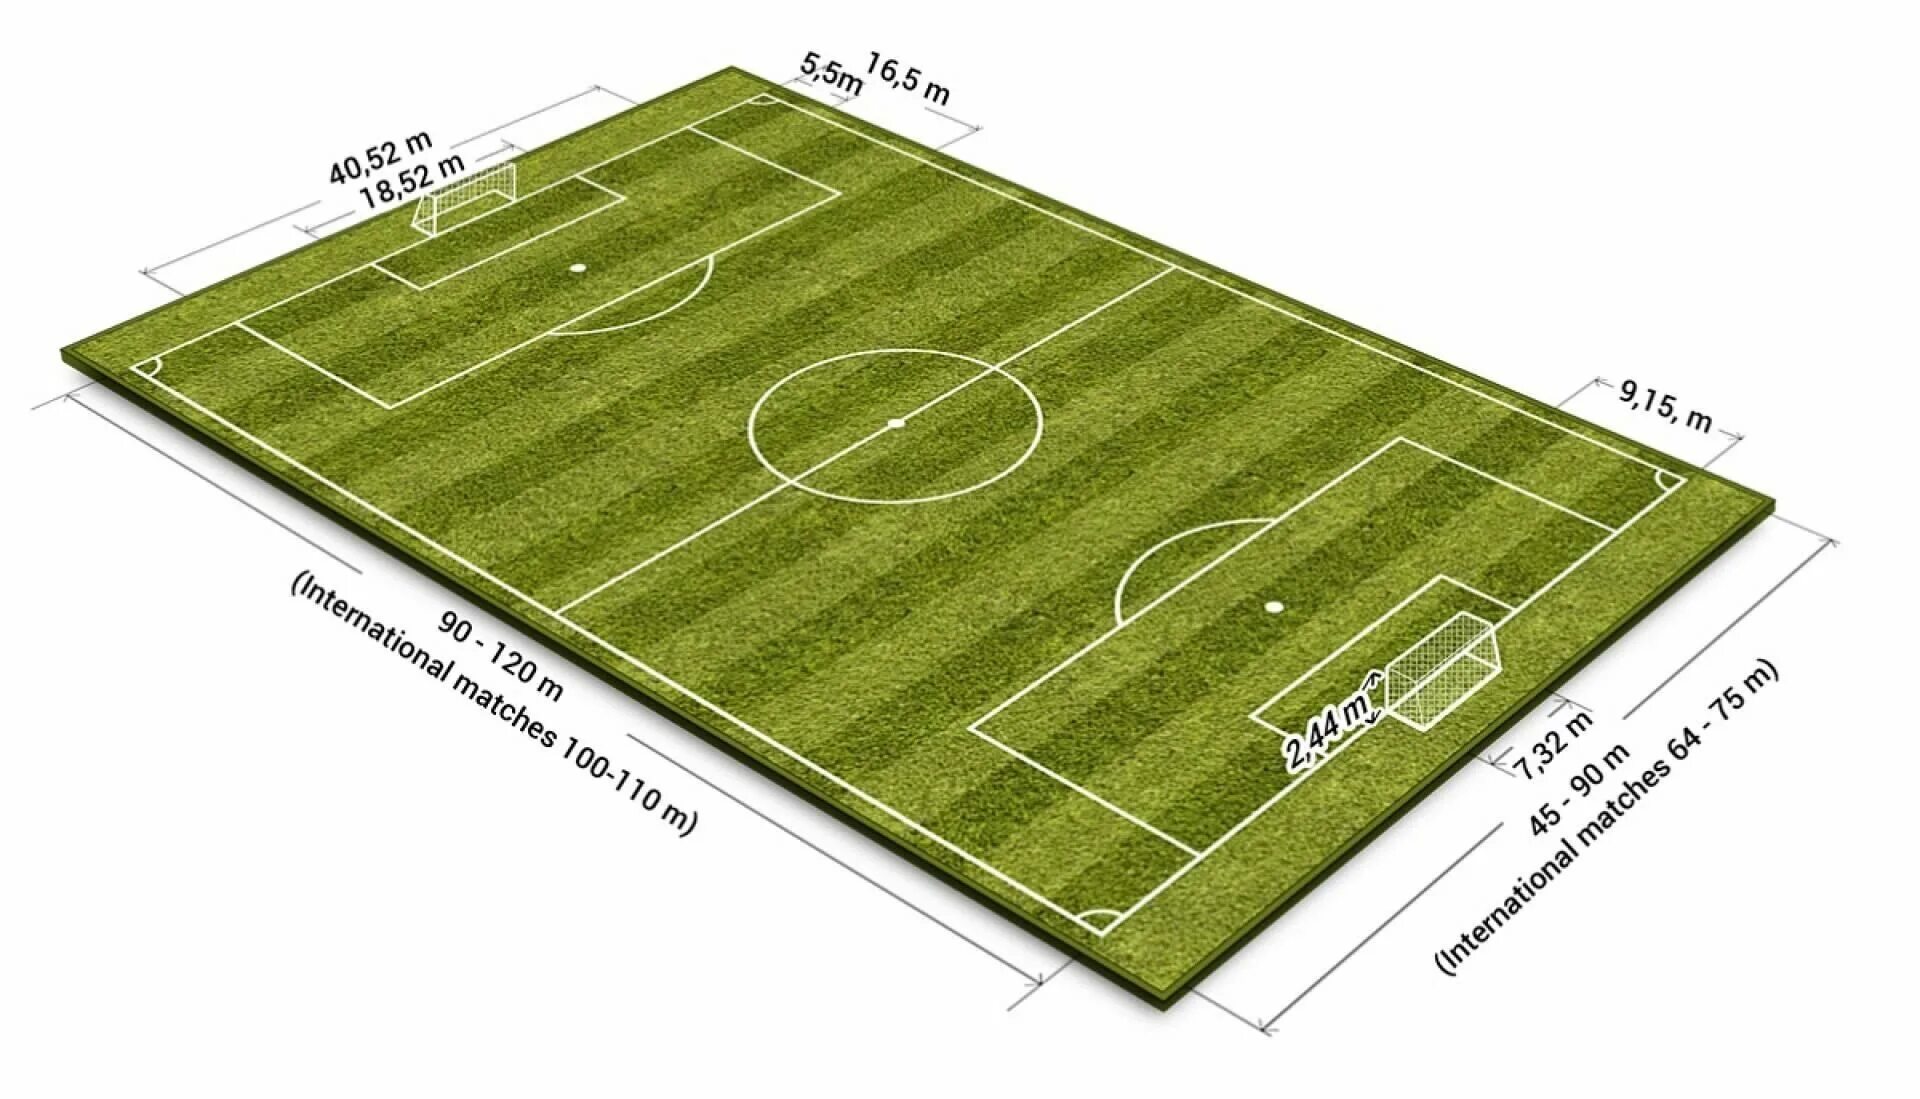 Длина поля 130 ширина 70. Площадь футбольного поля м2 стандарт. Разметка футбольного поля 68х105. Стандарт футбольного поля ФИФА. Размер футбольного поля FIFA.